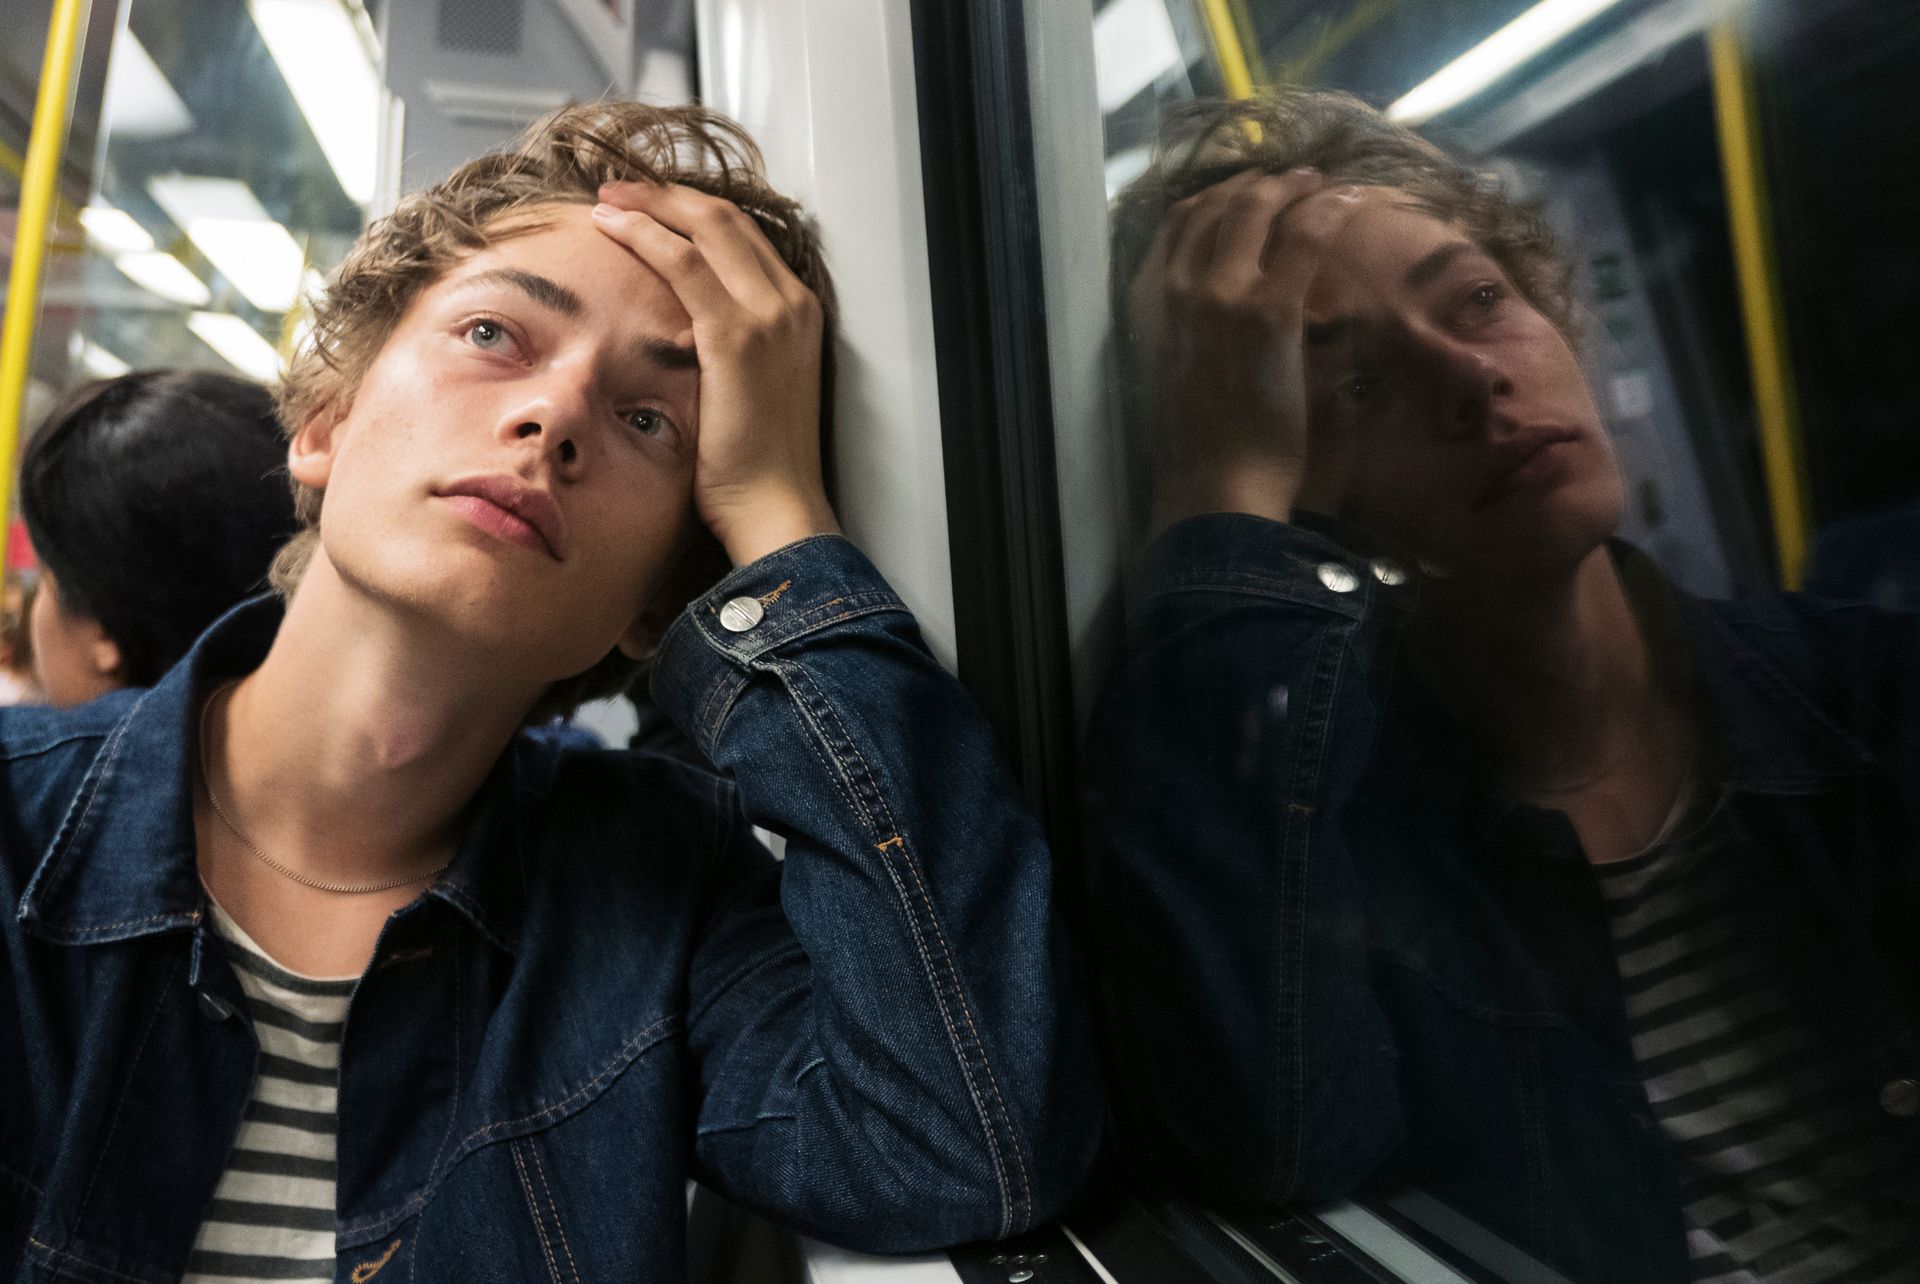 A teenage boy is sitting on a subway.